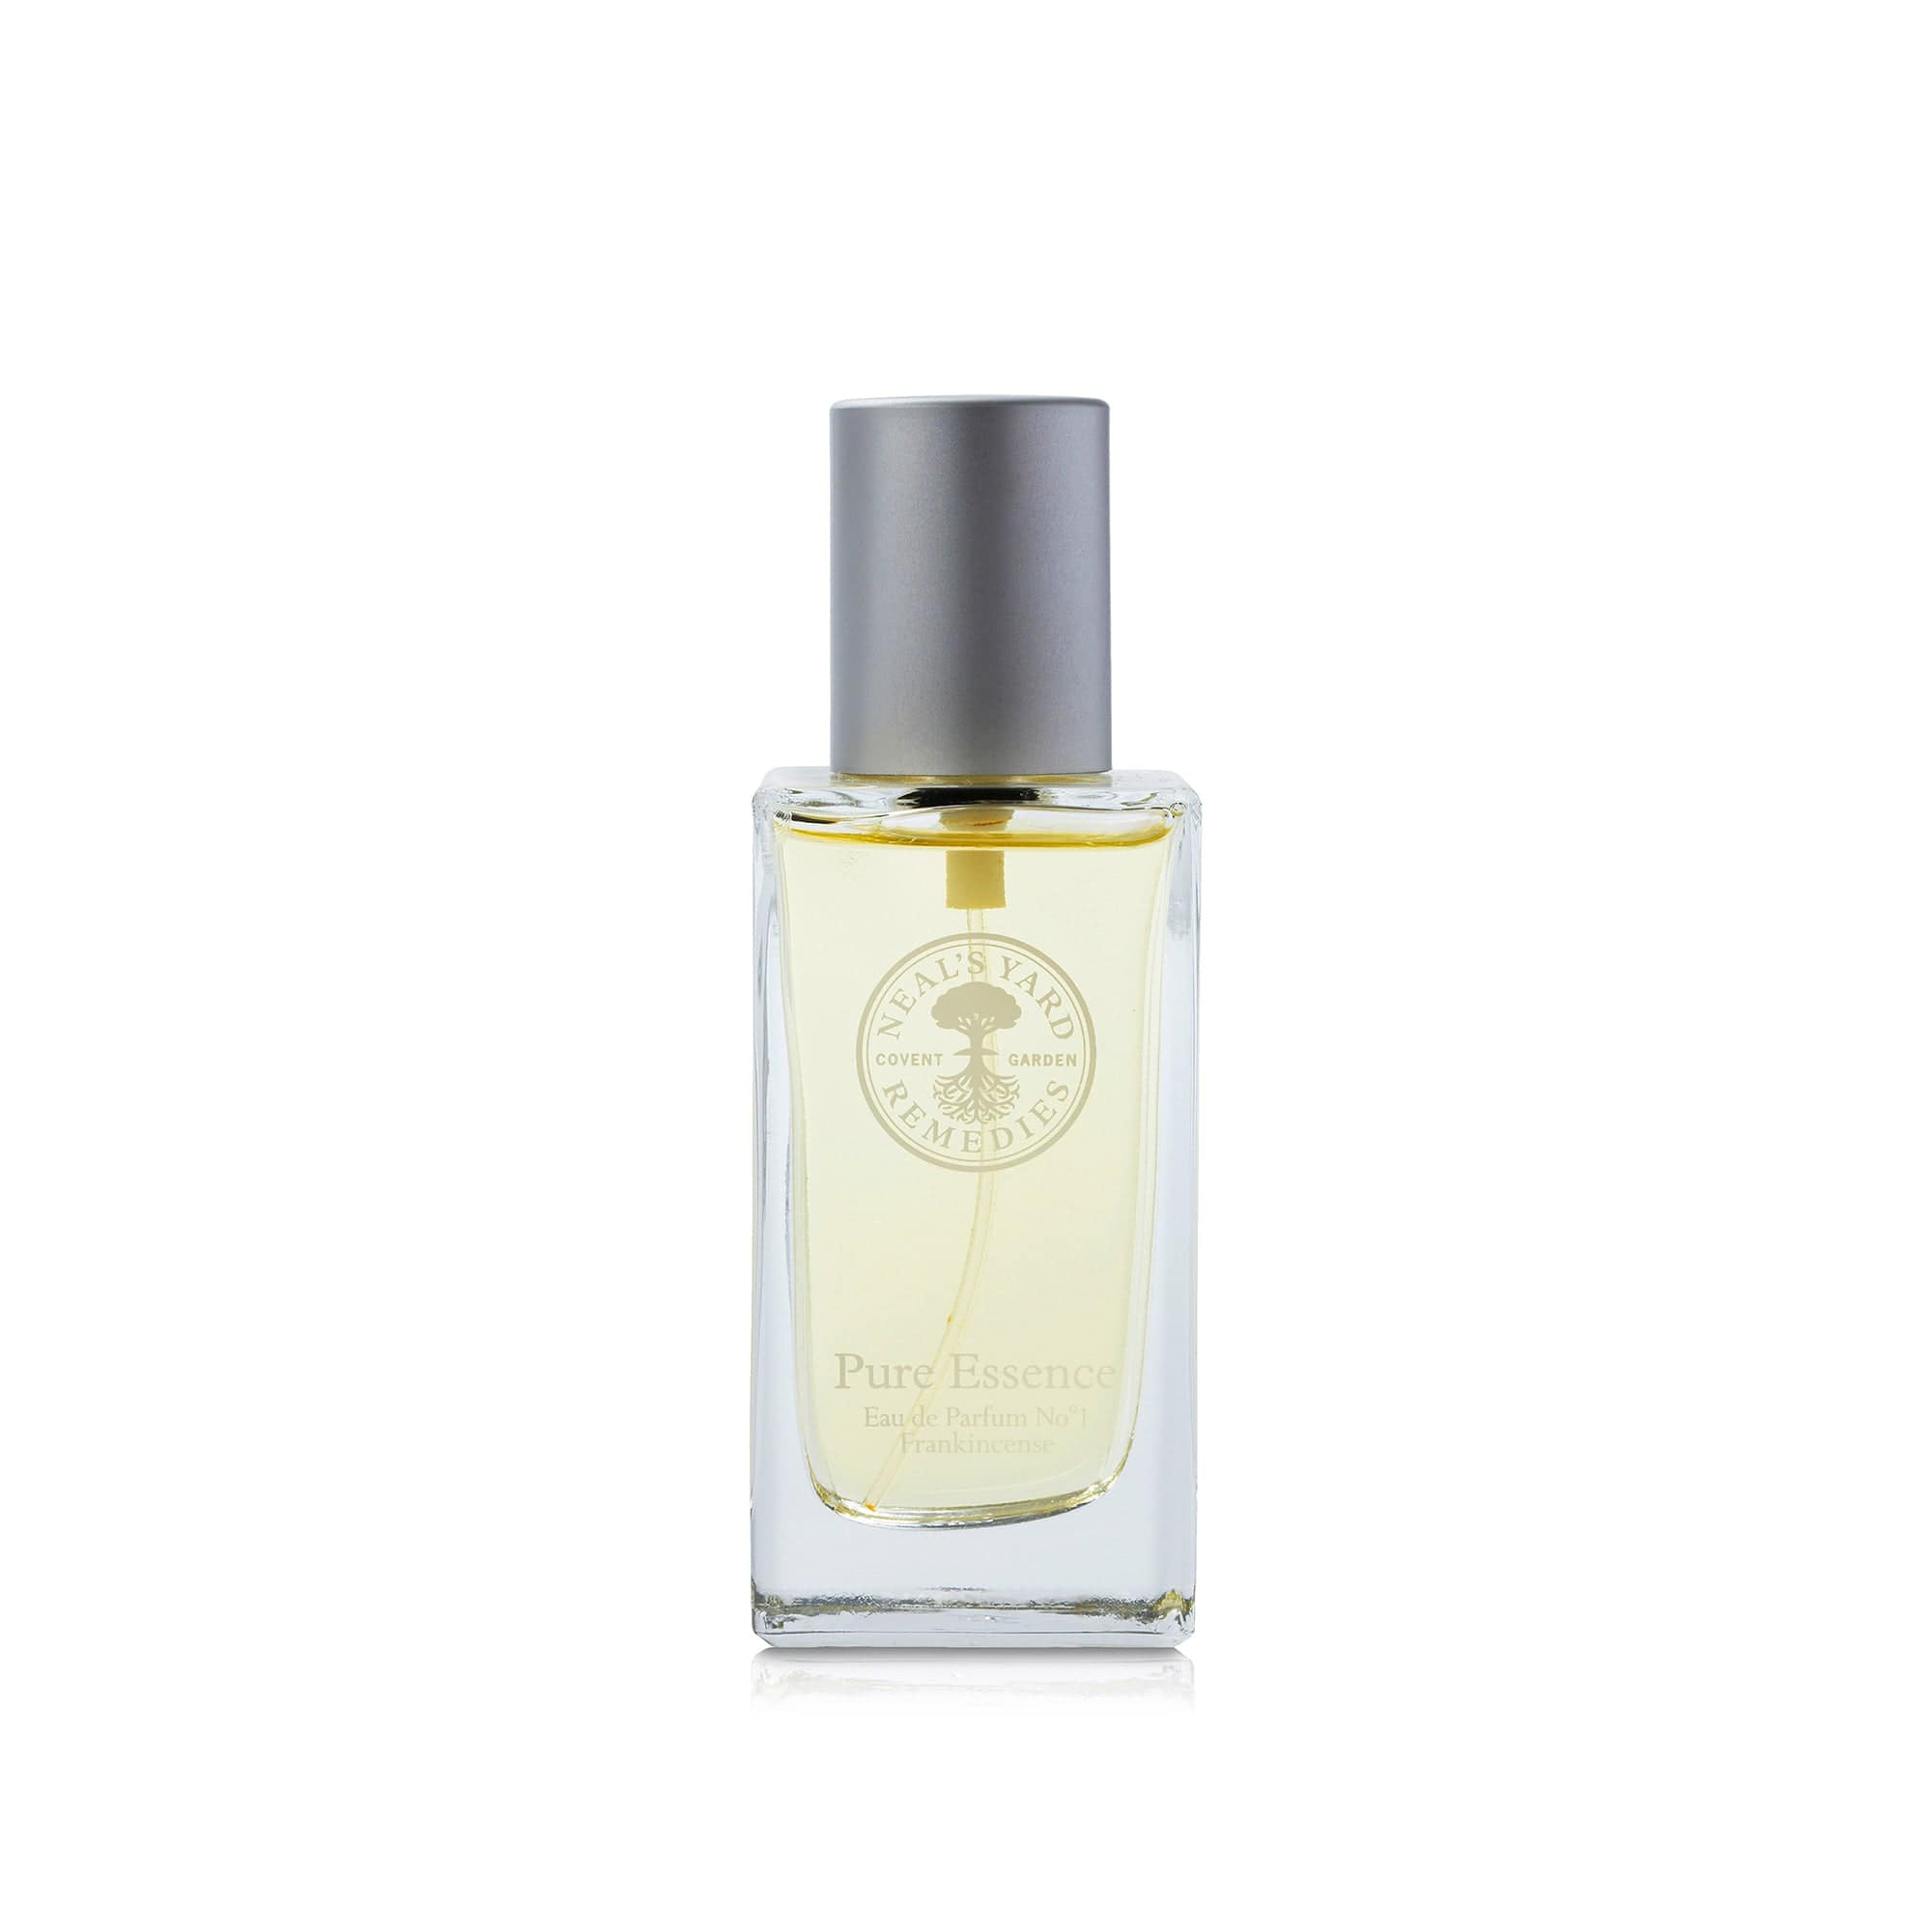 Neal's Yard Remedies | Pure Essence Eau de Parfum No.1 Frankincense 50ml